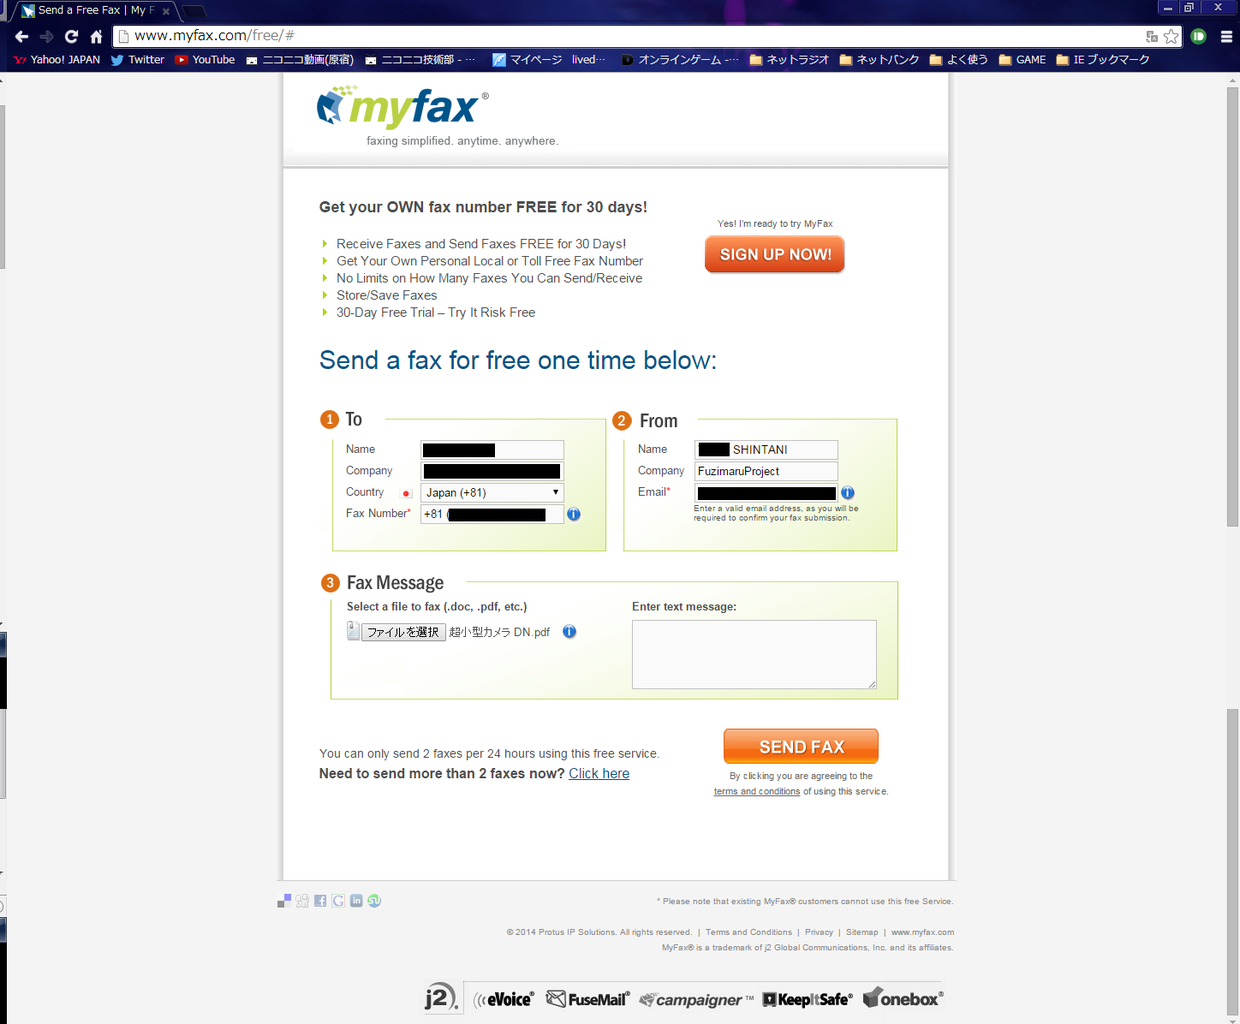 テスト受信等に使える無料fax Myfax を使ってみる Fuzimaru Project 本社